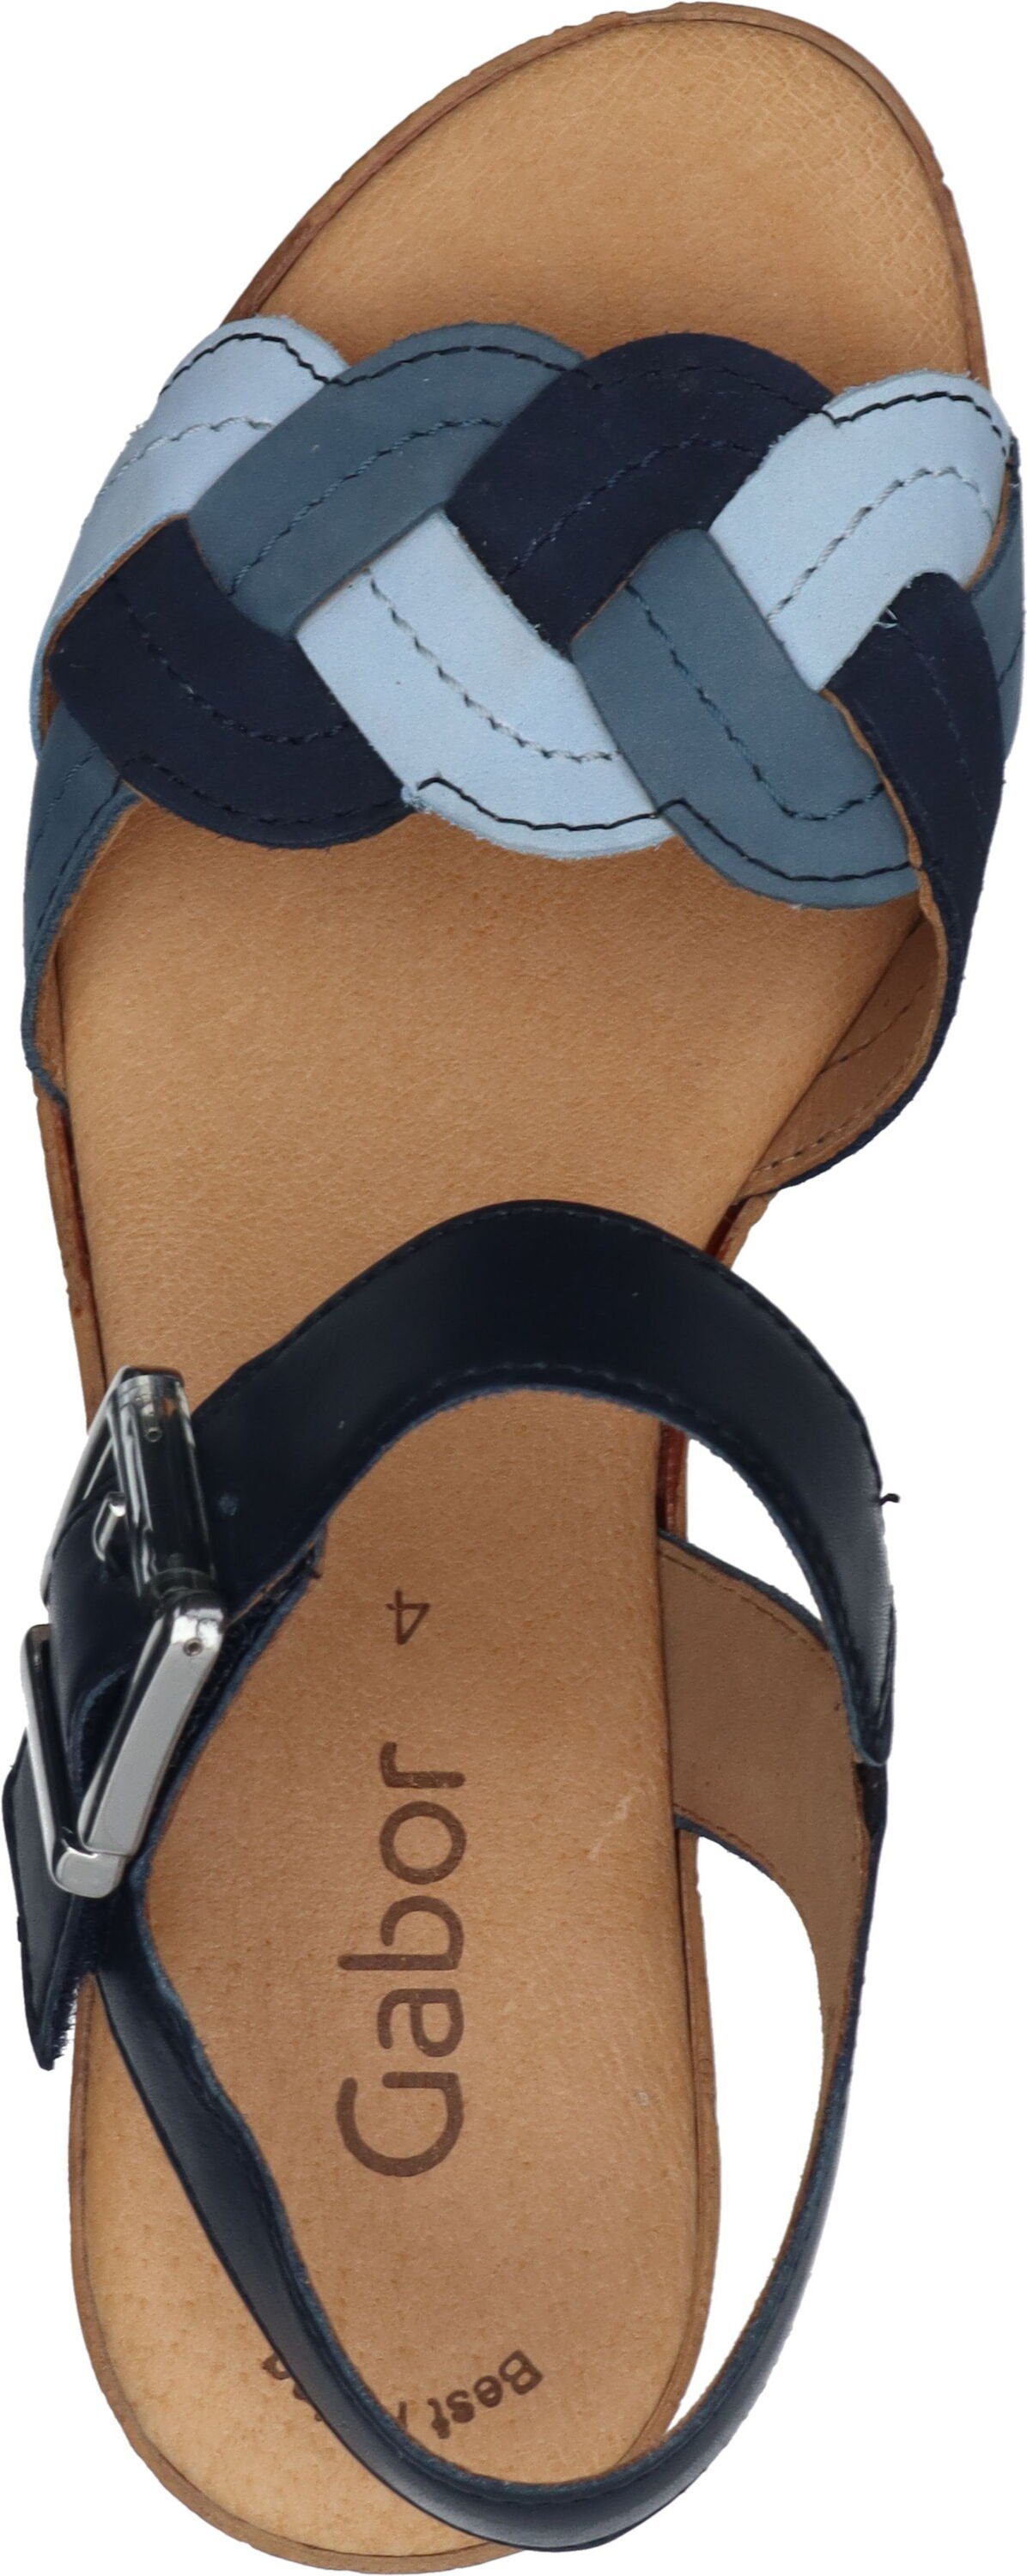 Gabor Sandaletten blau kombi Leder aus Sandalette echtem